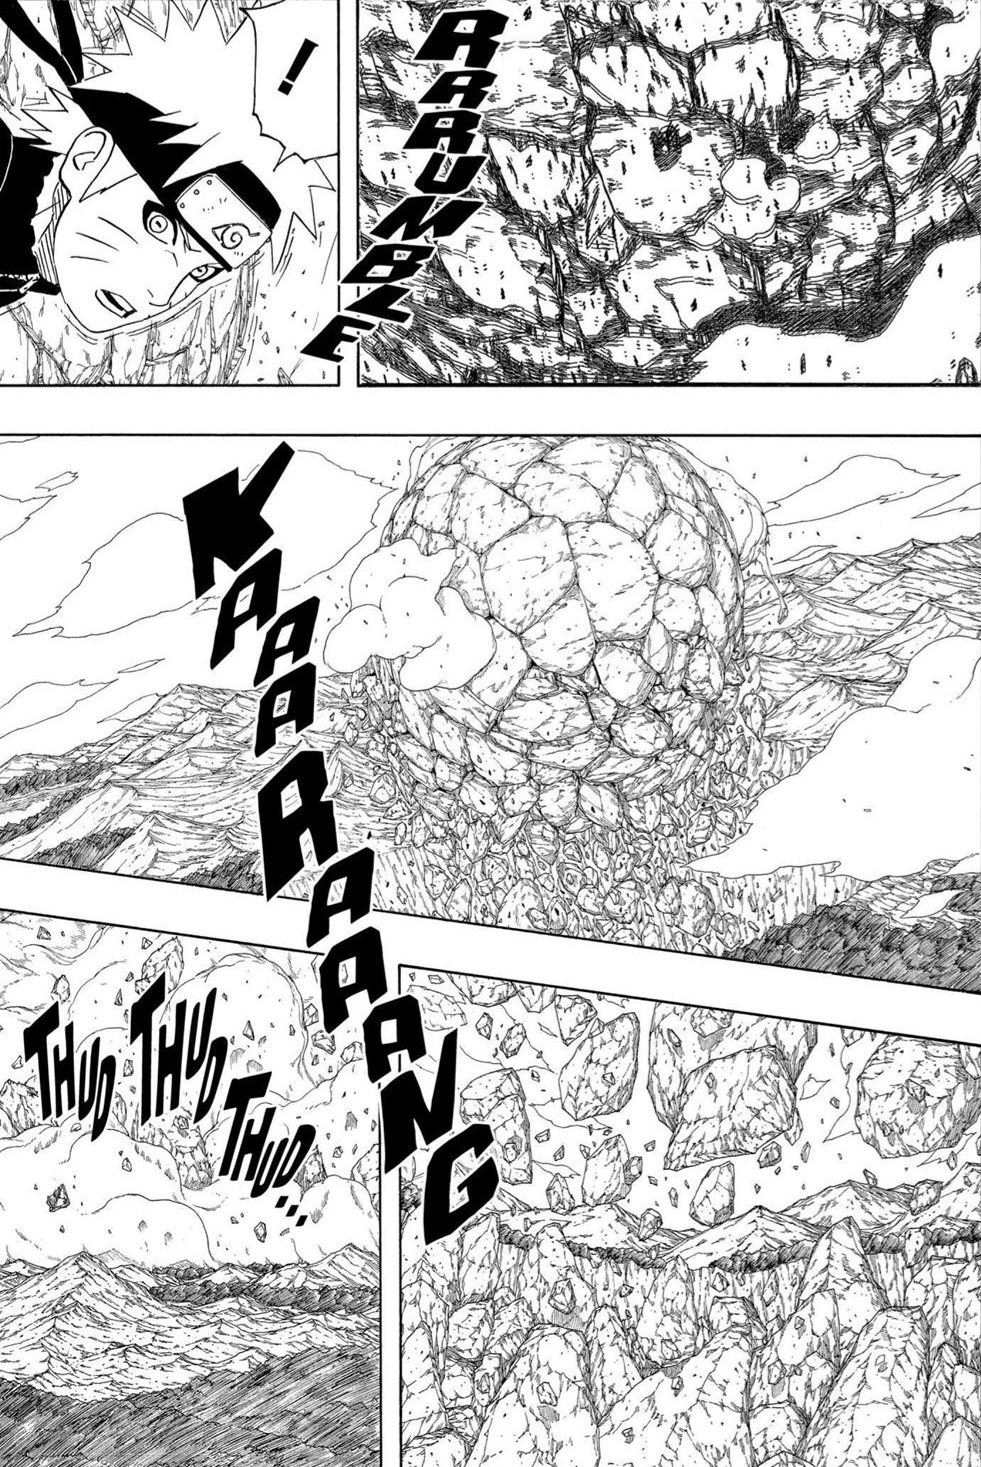 Magatamas e RasenShuriken seriam suficientes para destruir o CT do Edo Nagato? - Página 3 03_110